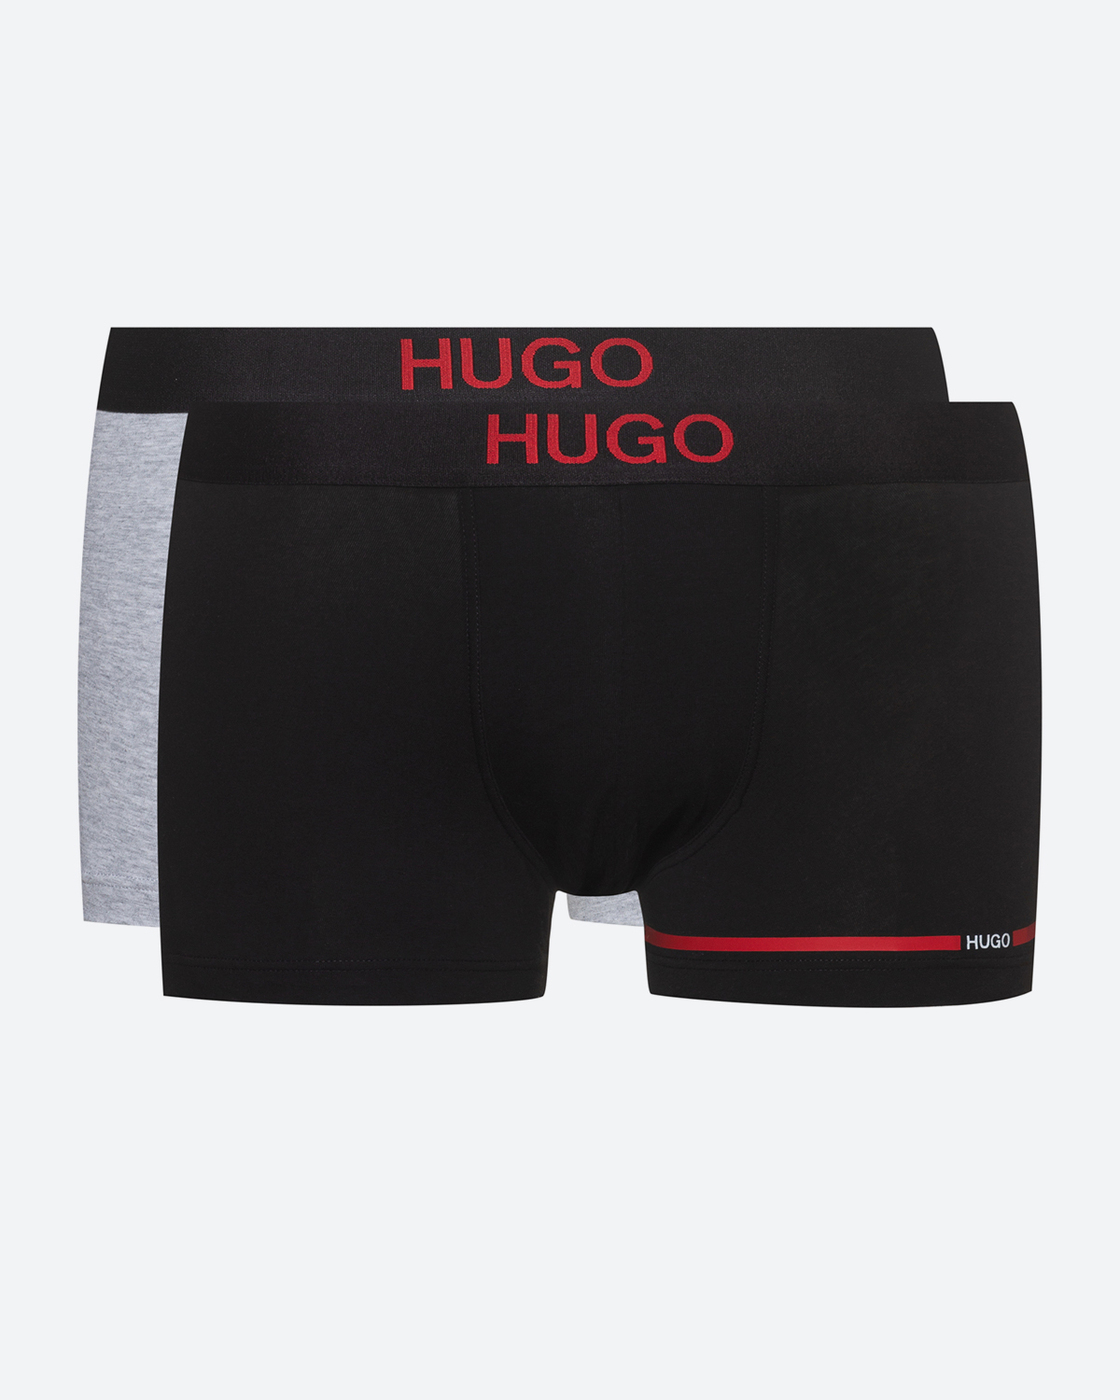 Трусы hugo. Трусы Хьюго. Hugo Boss нижнее белье. Боксеры Hugo Boss 48% coton 47% modal 5% elastan. Комплект трусов боксеры Hugo, 3 шт.